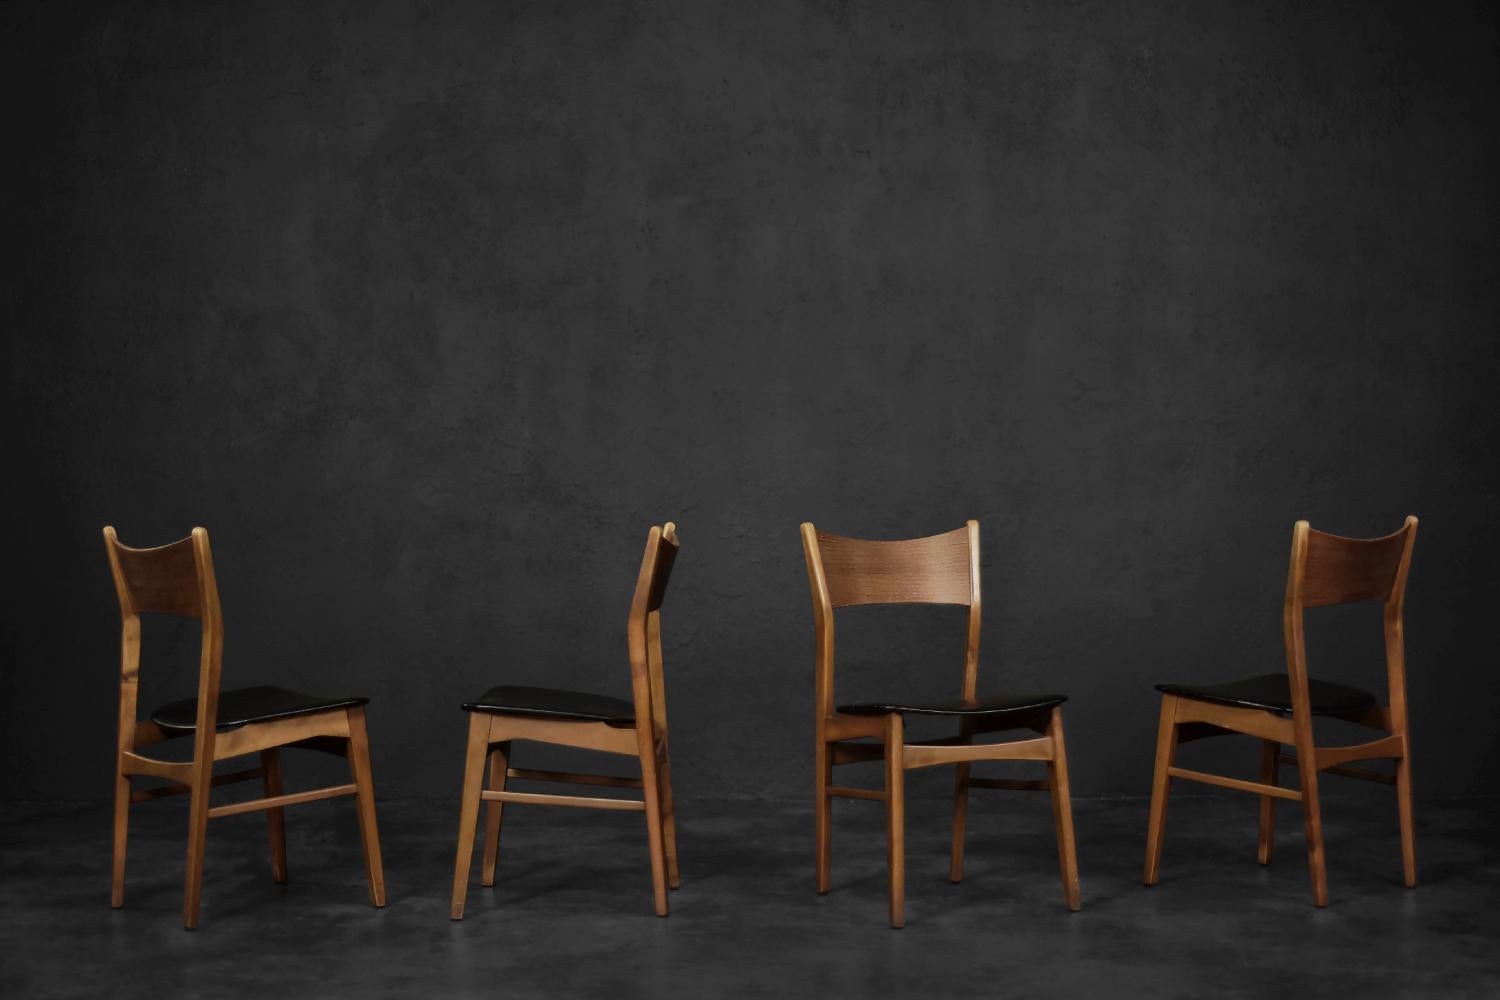 Cet ensemble de quatre chaises a été fabriqué au Danemark dans les années 1960. Le cadre est en bois de hêtre dans une teinte chaude de marron. Le dossier est en teck et profilé pour assurer le confort d'utilisation. Le siège est à l'origine